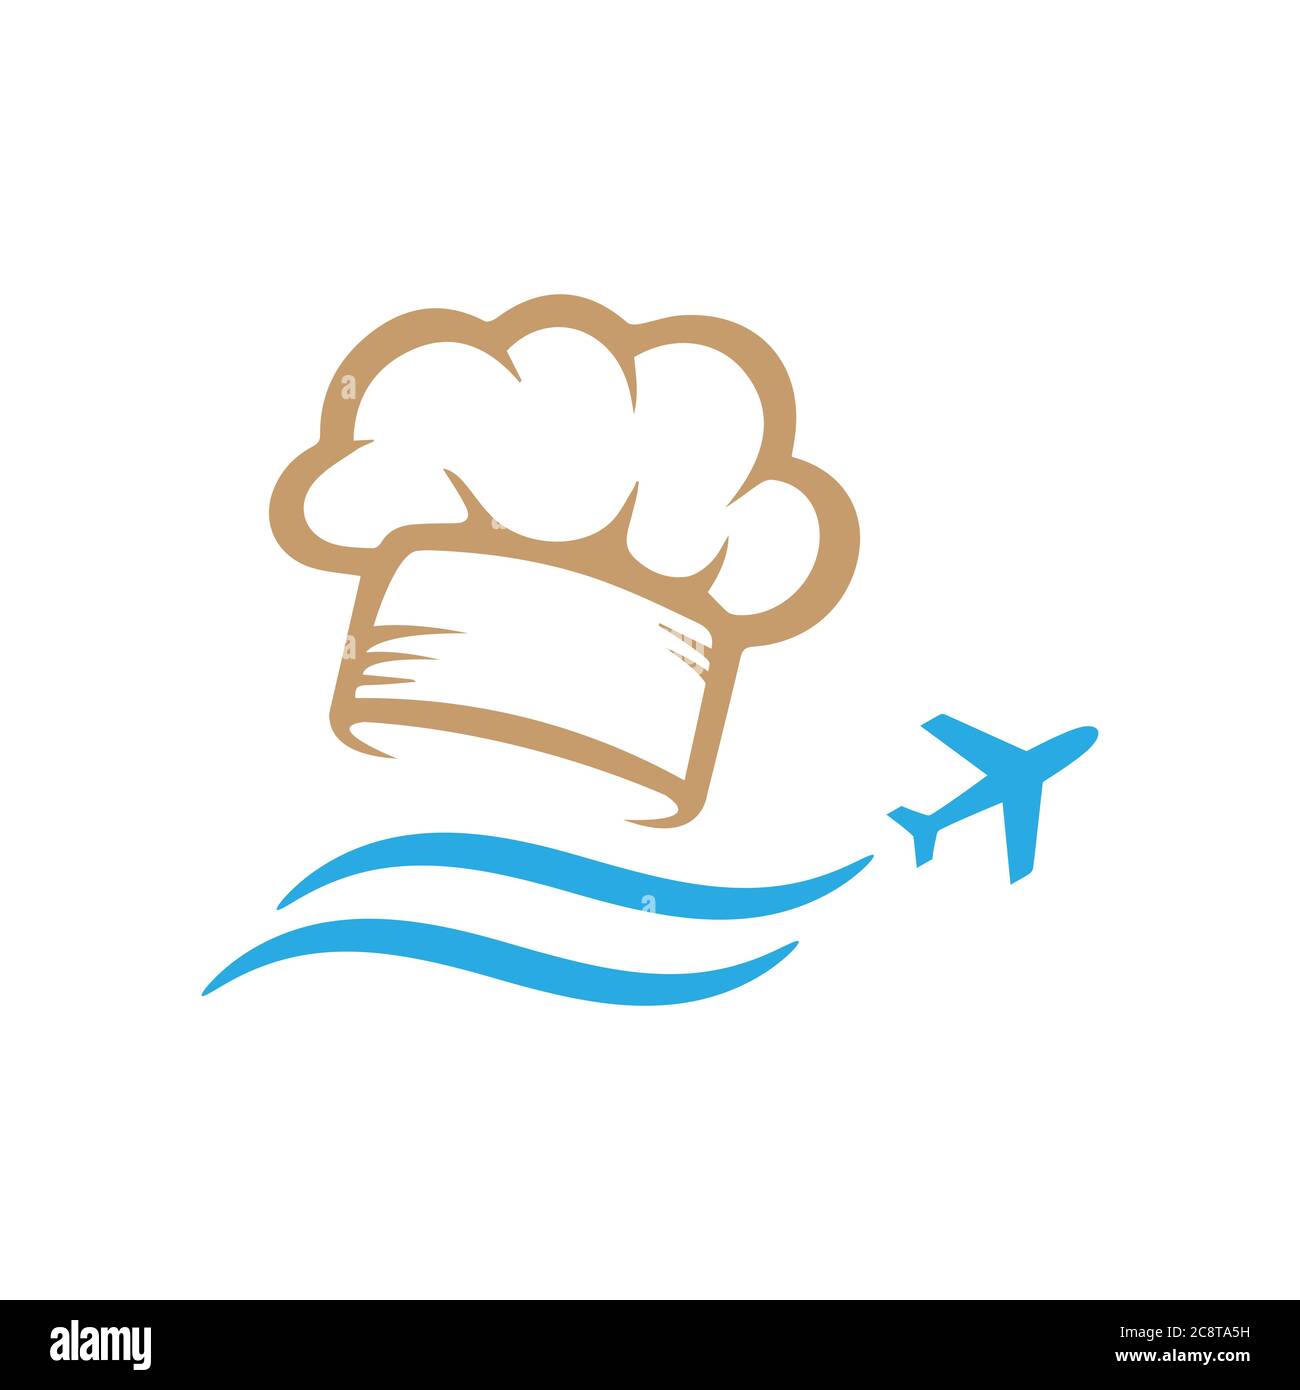 Immagini combinate di simbolo di trasporto e icona utensili da cucina per il blogging alimentare vlogging viaggio logo disegno vettore stock illustrazione Illustrazione Vettoriale